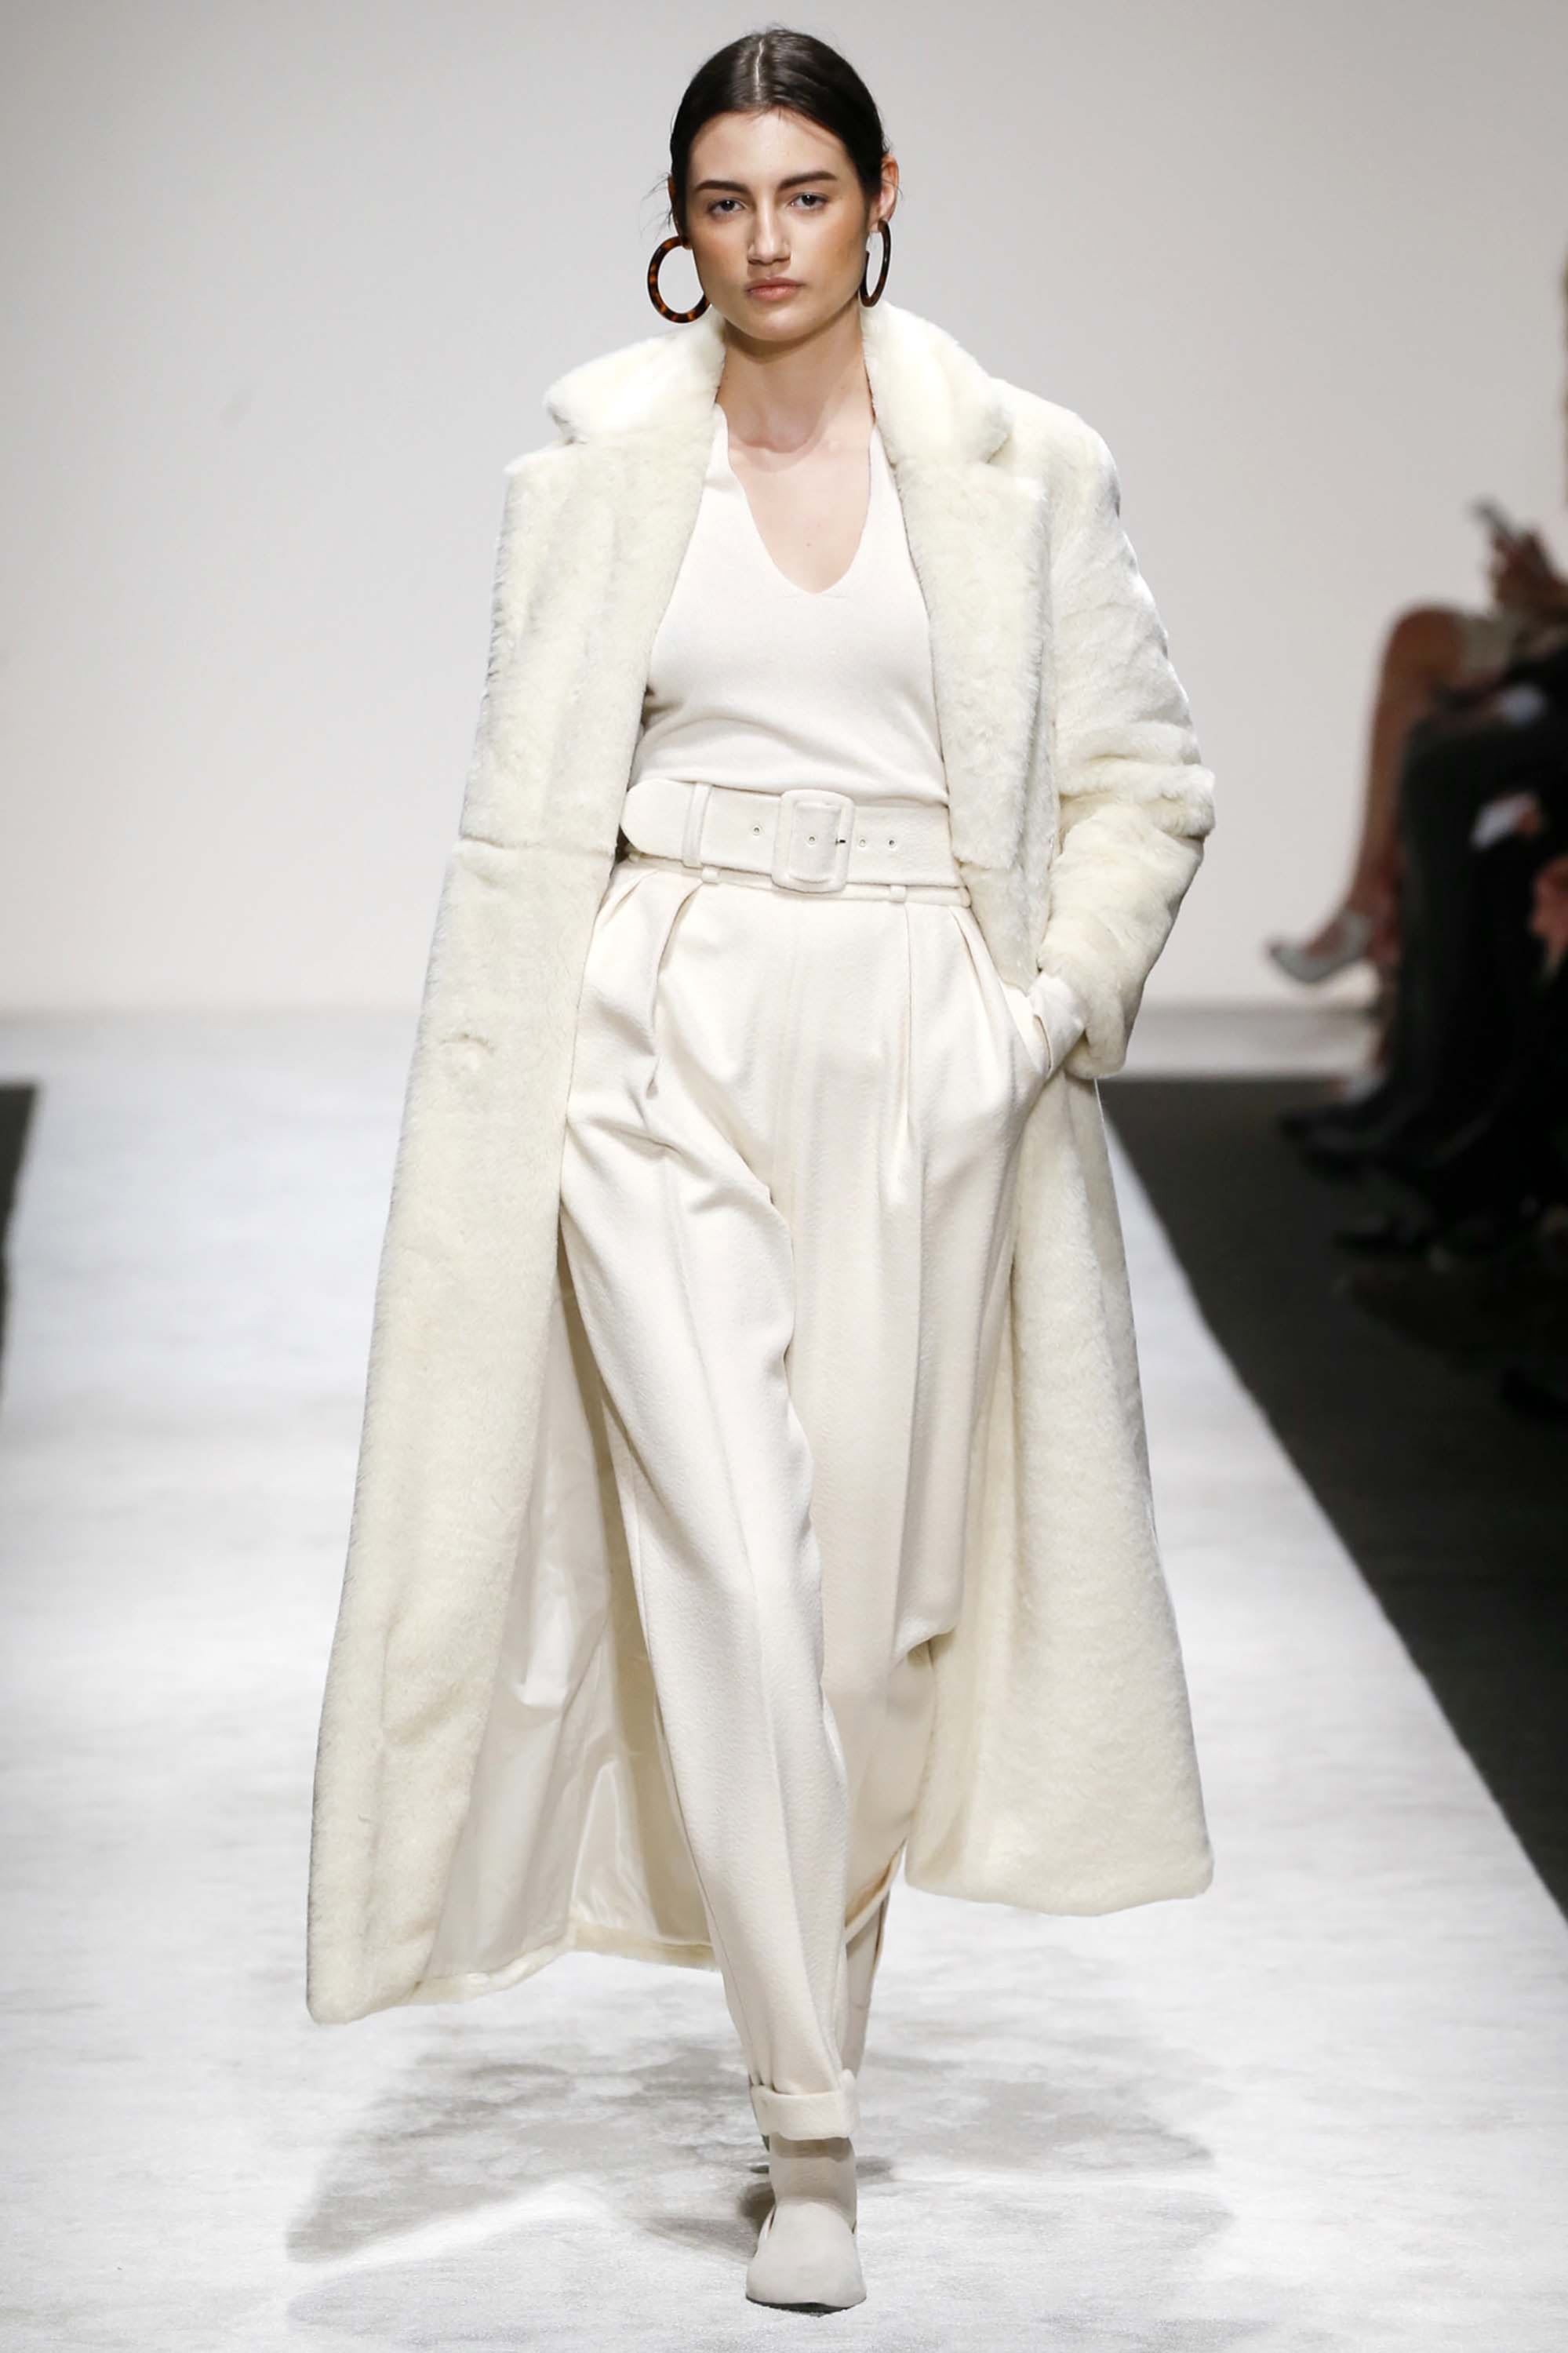 Laura Biagiotti F/W 18 womenswear #2 - Tagwalk: The Fashion Search Engine